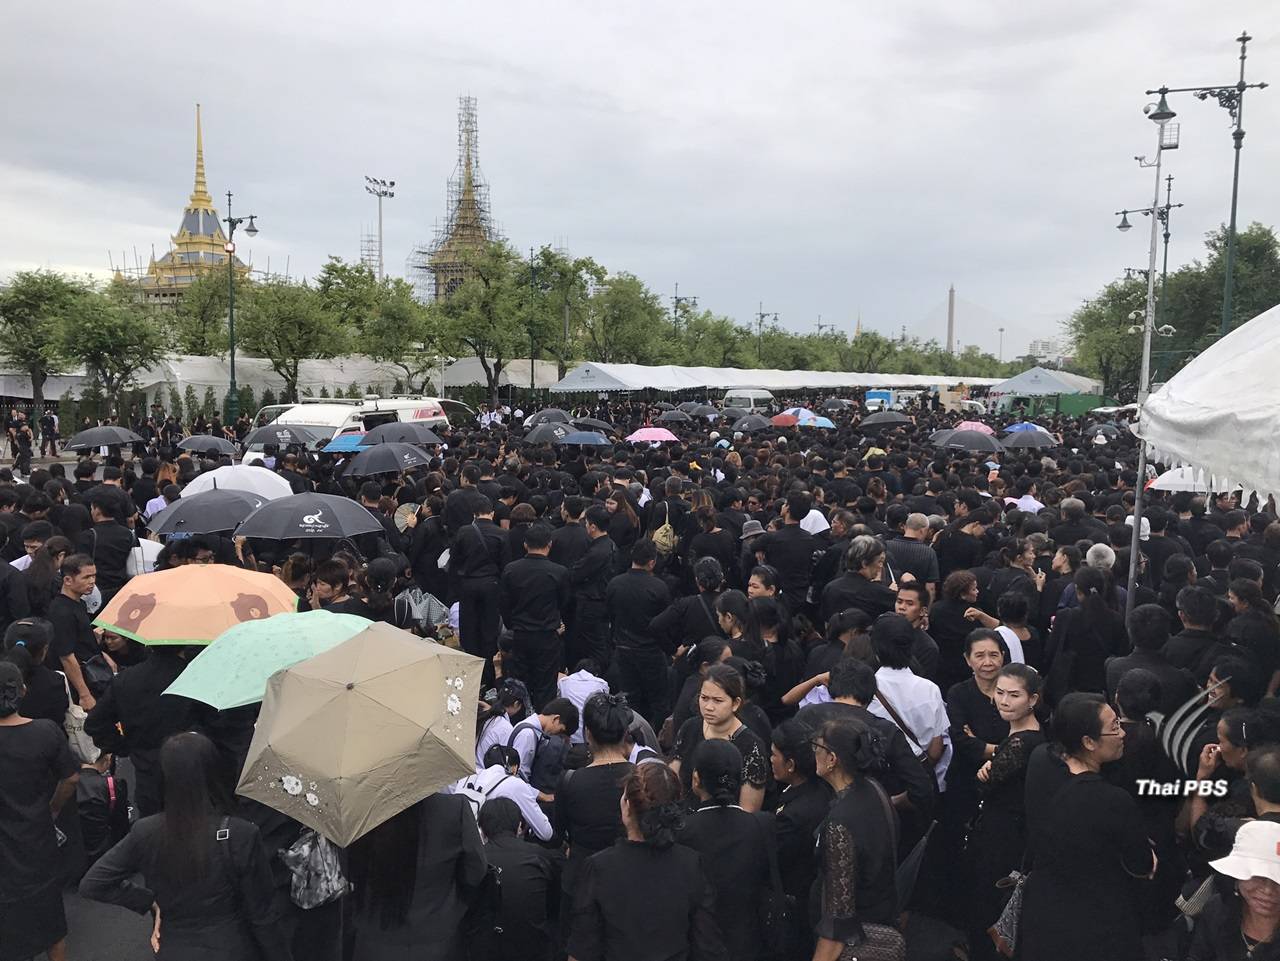 คนไทยเกิดภาวะ "อาการใจหาย" หลังข่าวปิดกราบพระบรมศพ รัชกาลที่ 9 